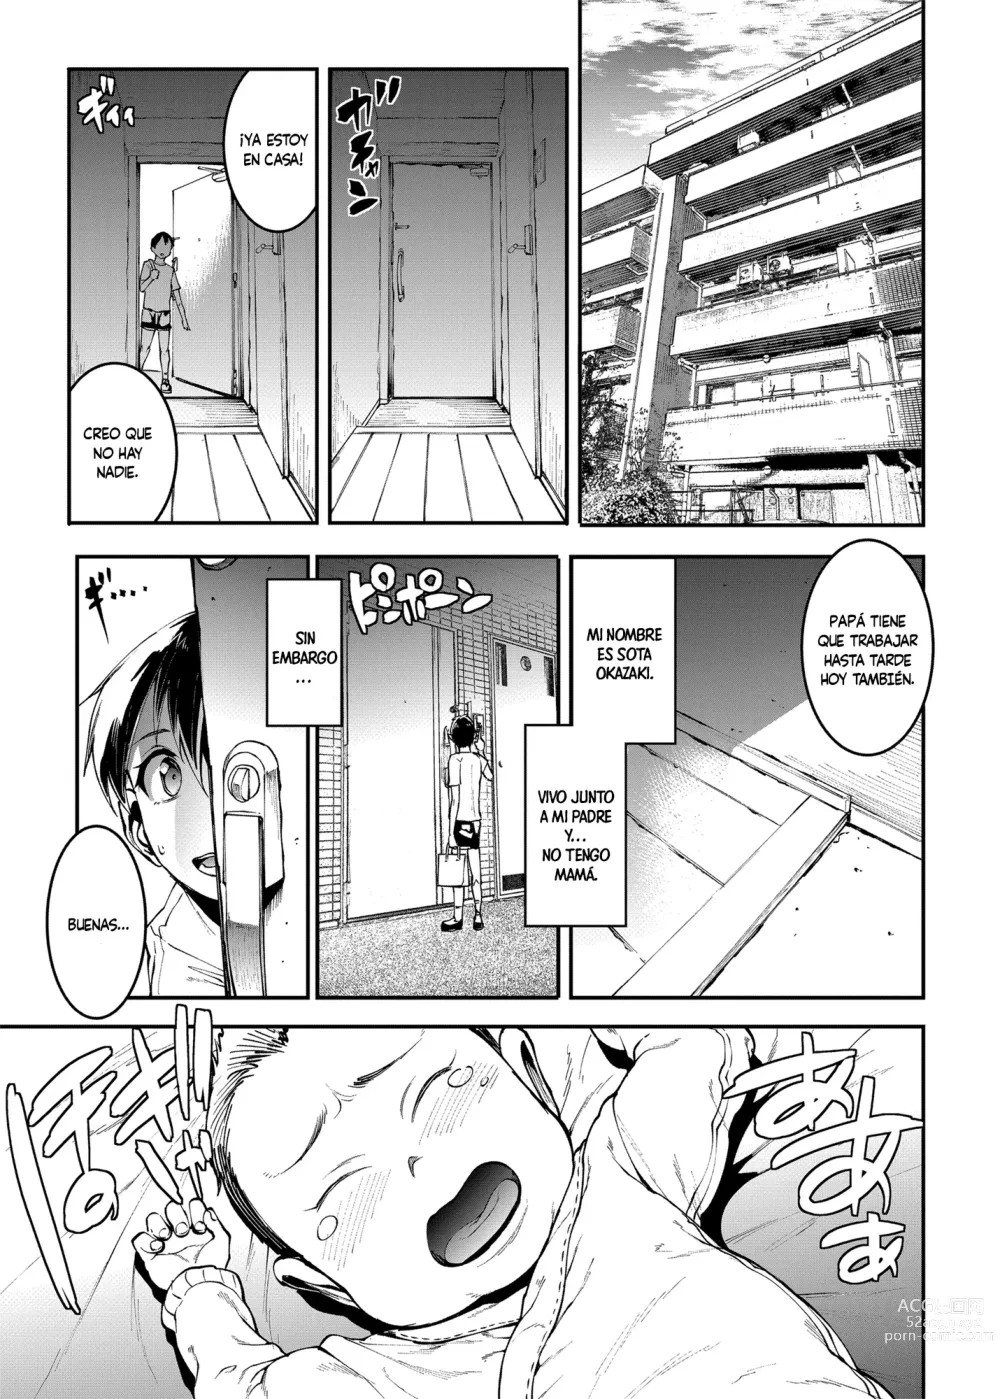 Page 3 of doujinshi El Condominio De Las Madres 〜Capítulo 2 Departamento #601 Kaoru Sonozaki (36)〜